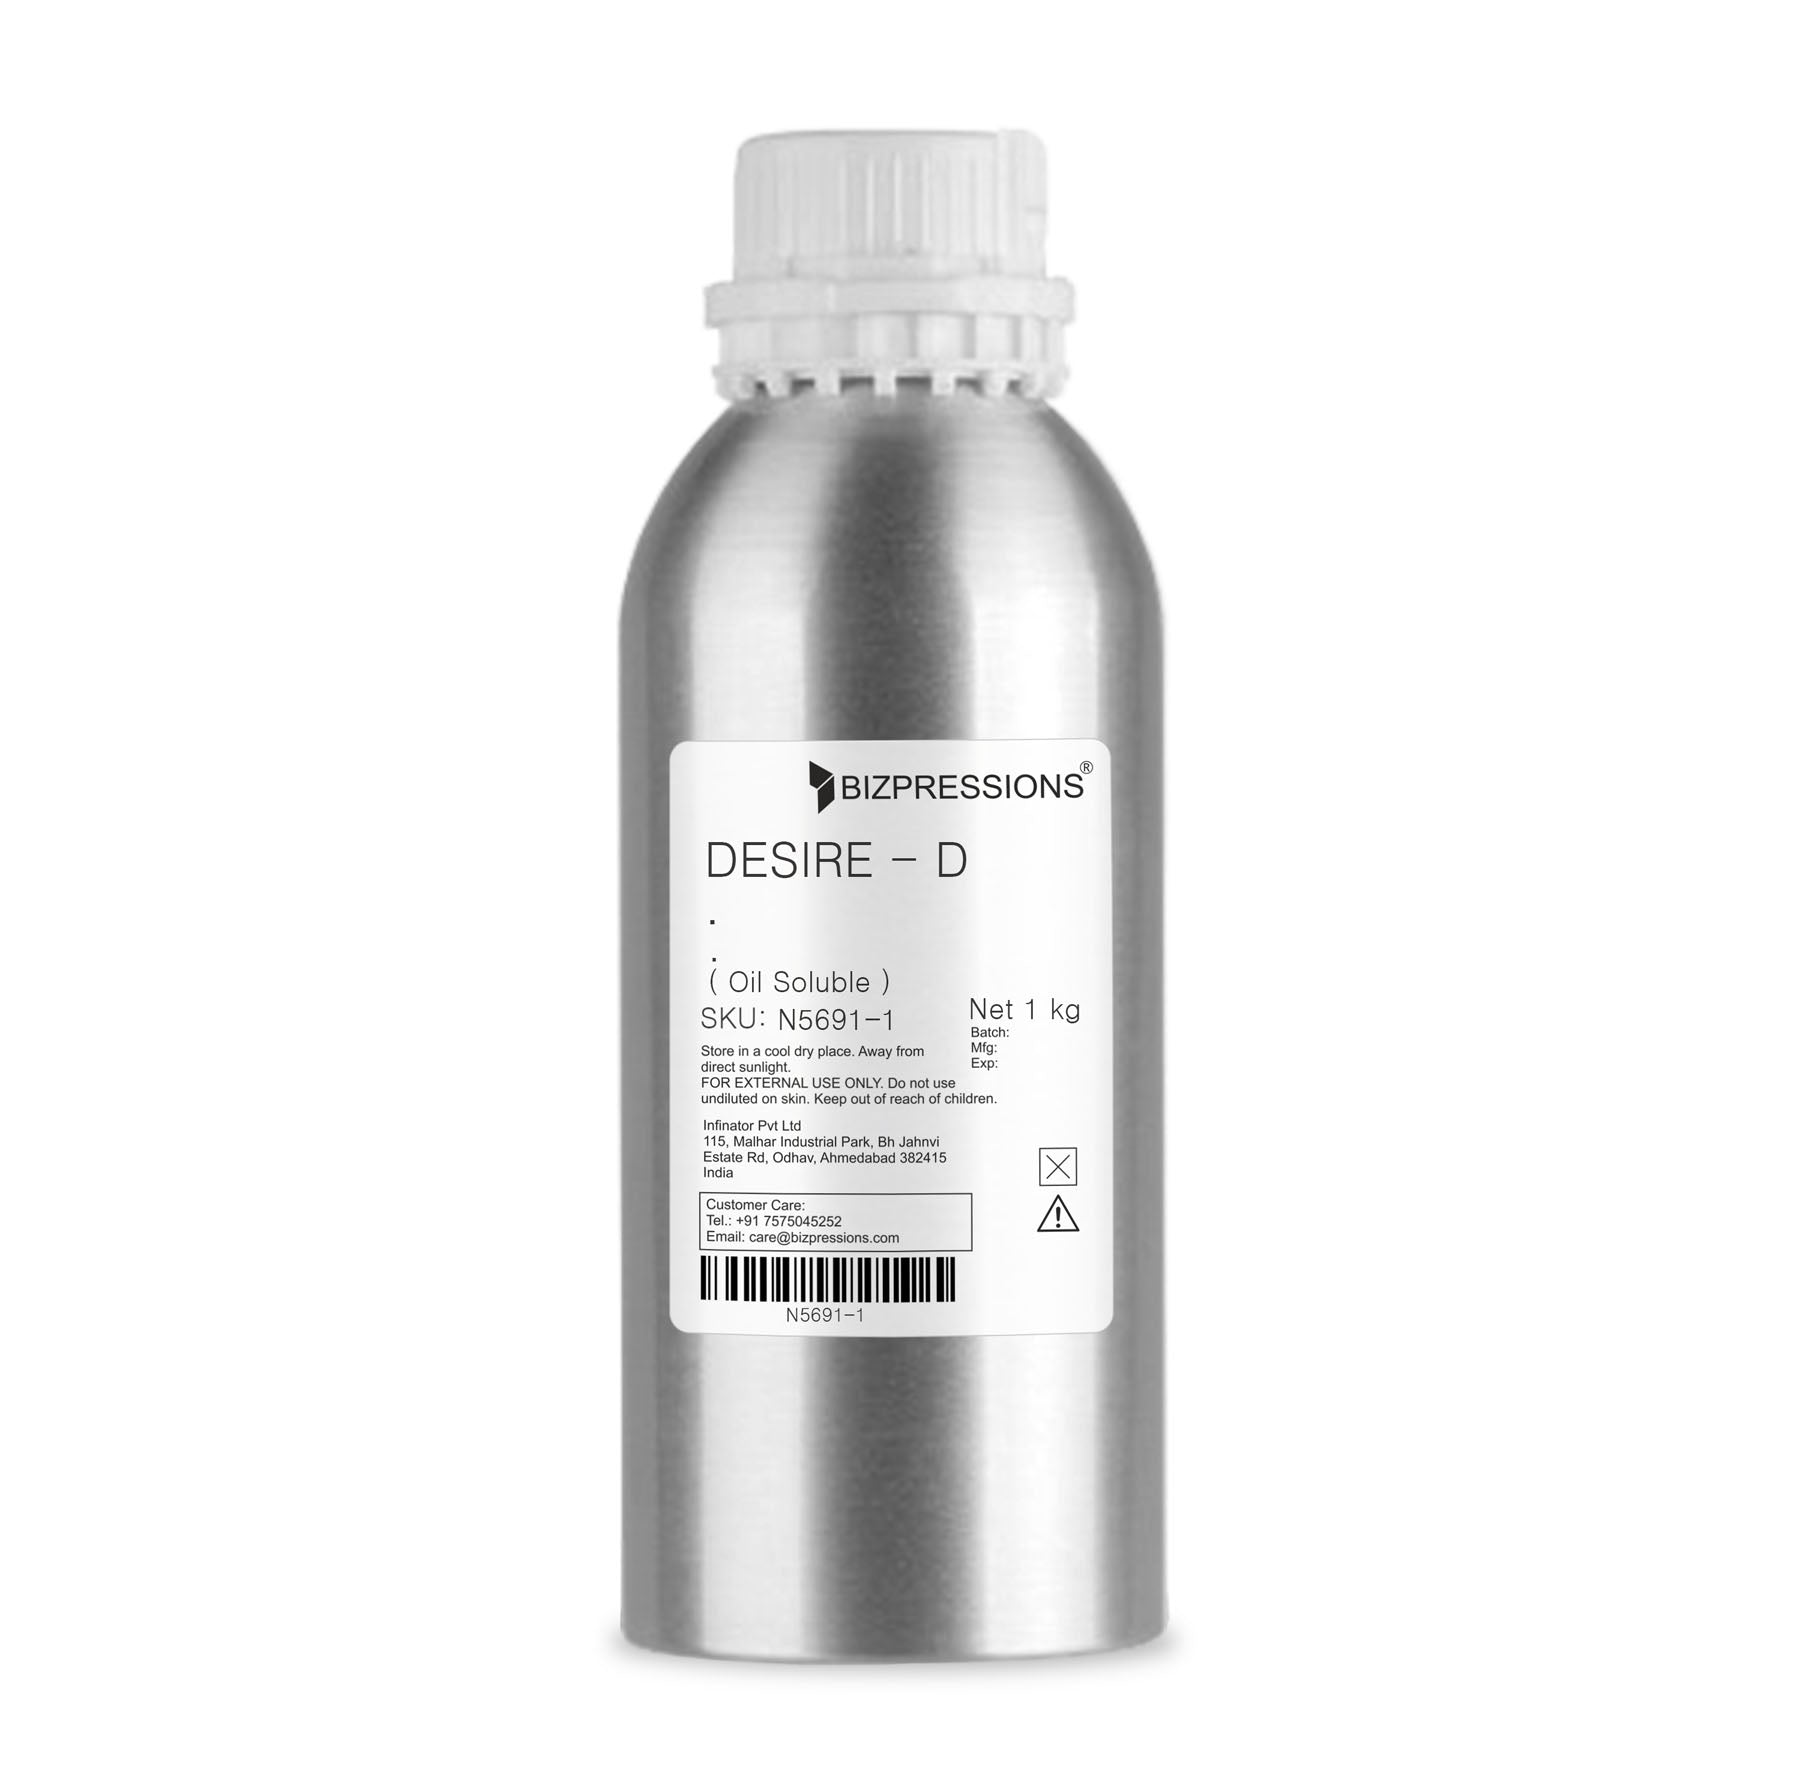 DESIRE - D - Fragrance ( Oil Soluble ) - 1 kg